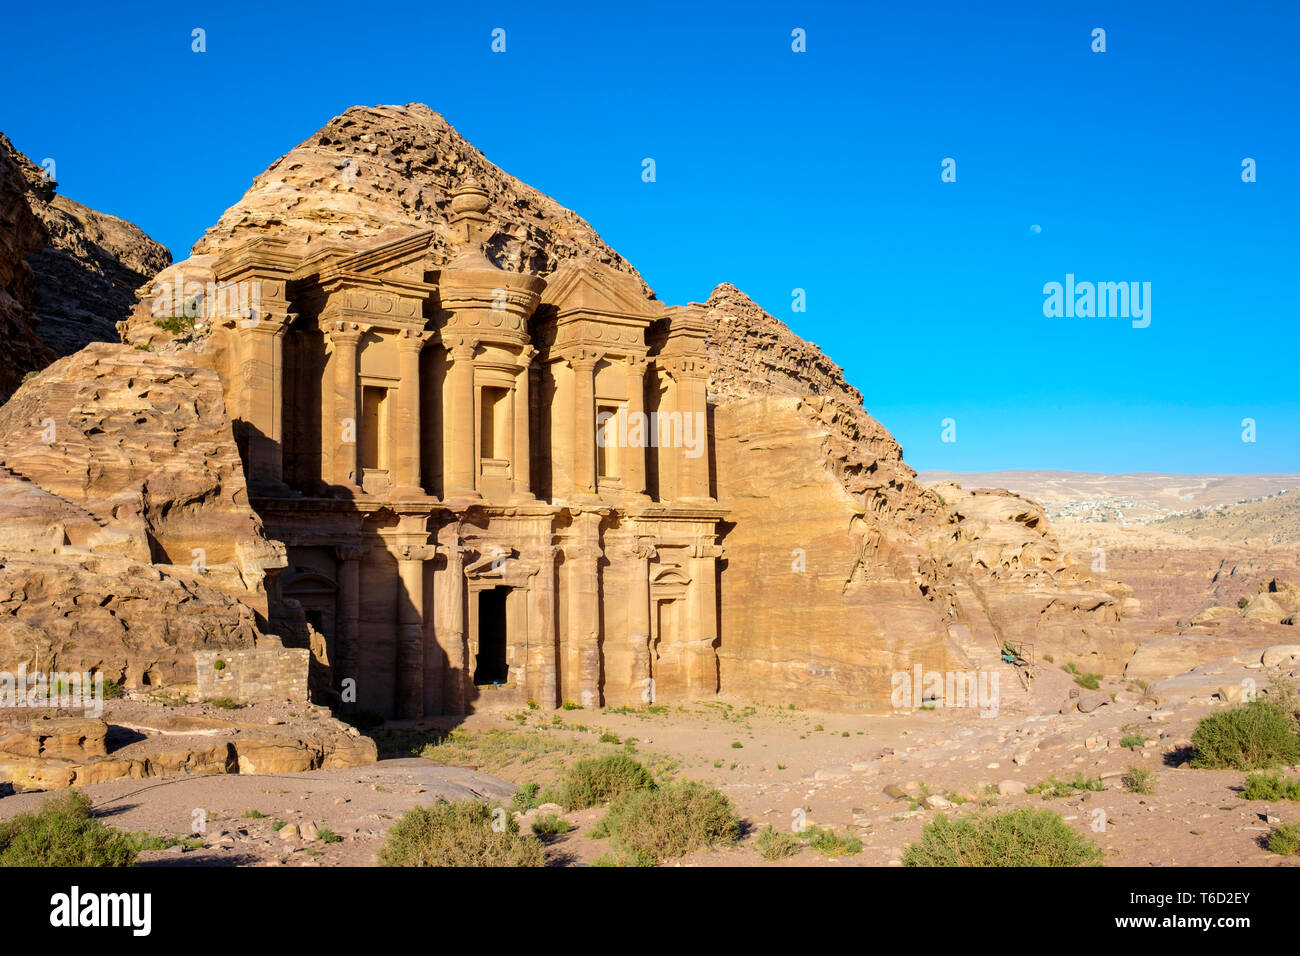 La Jordanie, le Gouvernorat de Ma'an, Petra. UNESCO World Heritage Site. Le monastère Ad-Deir, sculptée dans une falaise de grès. Banque D'Images